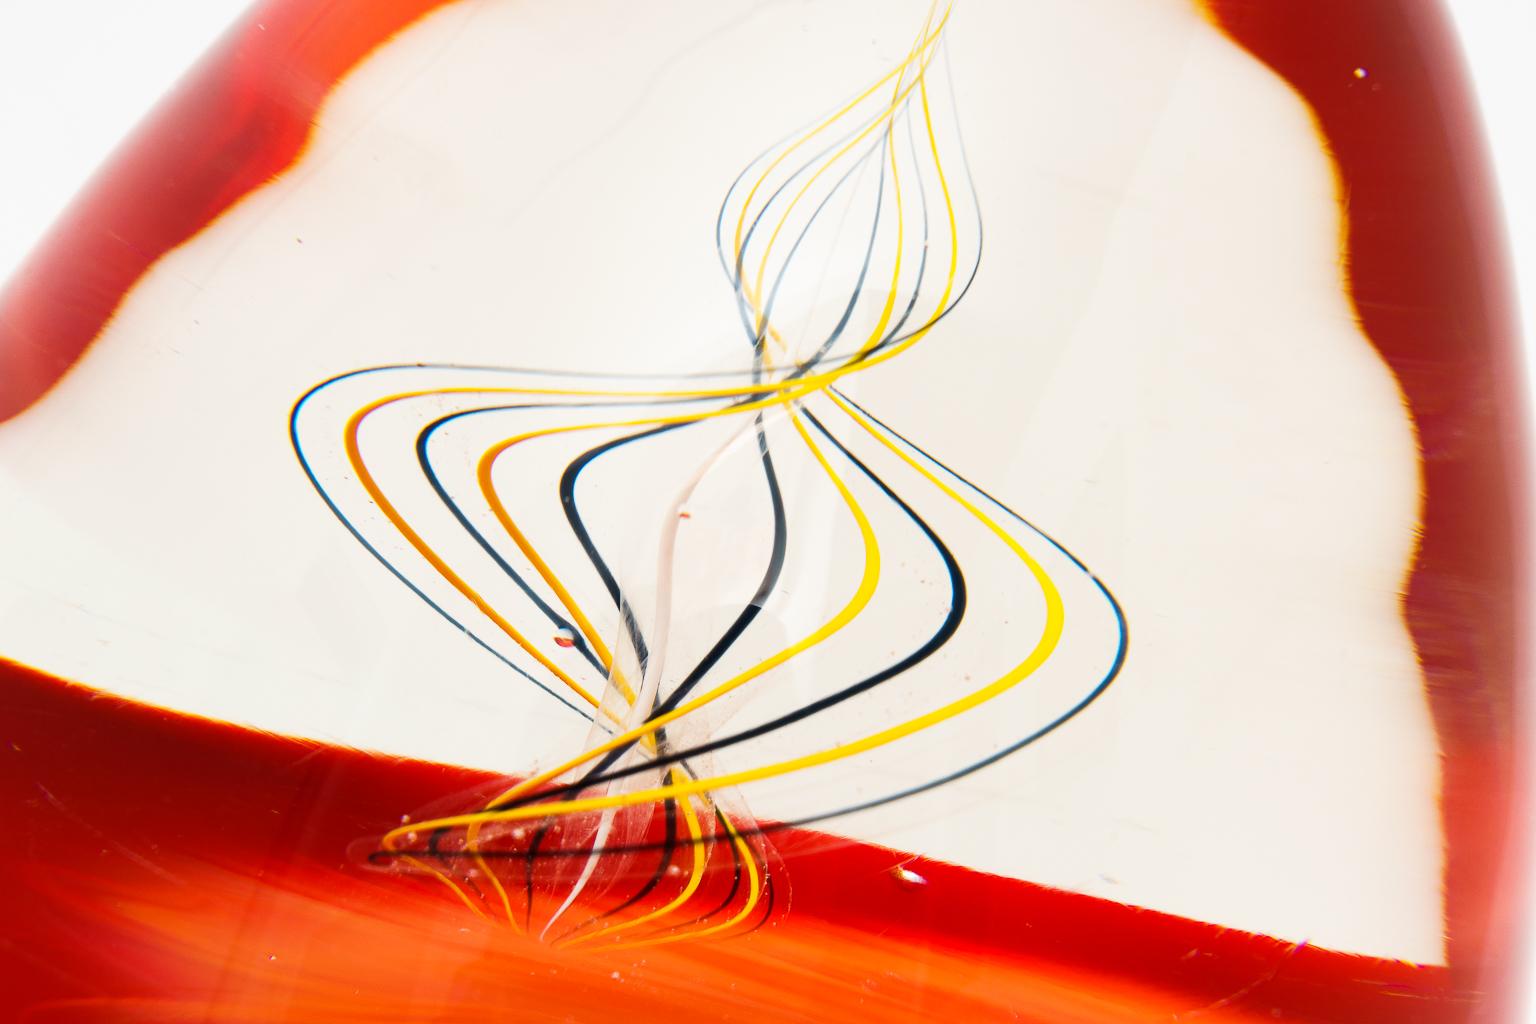 Oggetti Murano glass egg form sculpture signed by artisans Elio Raffaeli & Roberto Cammozzo from a private Palm Beach mansion art collection

About the artisans:
Elio Raffaeli:

Born in Venice in 1936 to a Muranese family, Elio Raffaeli lived